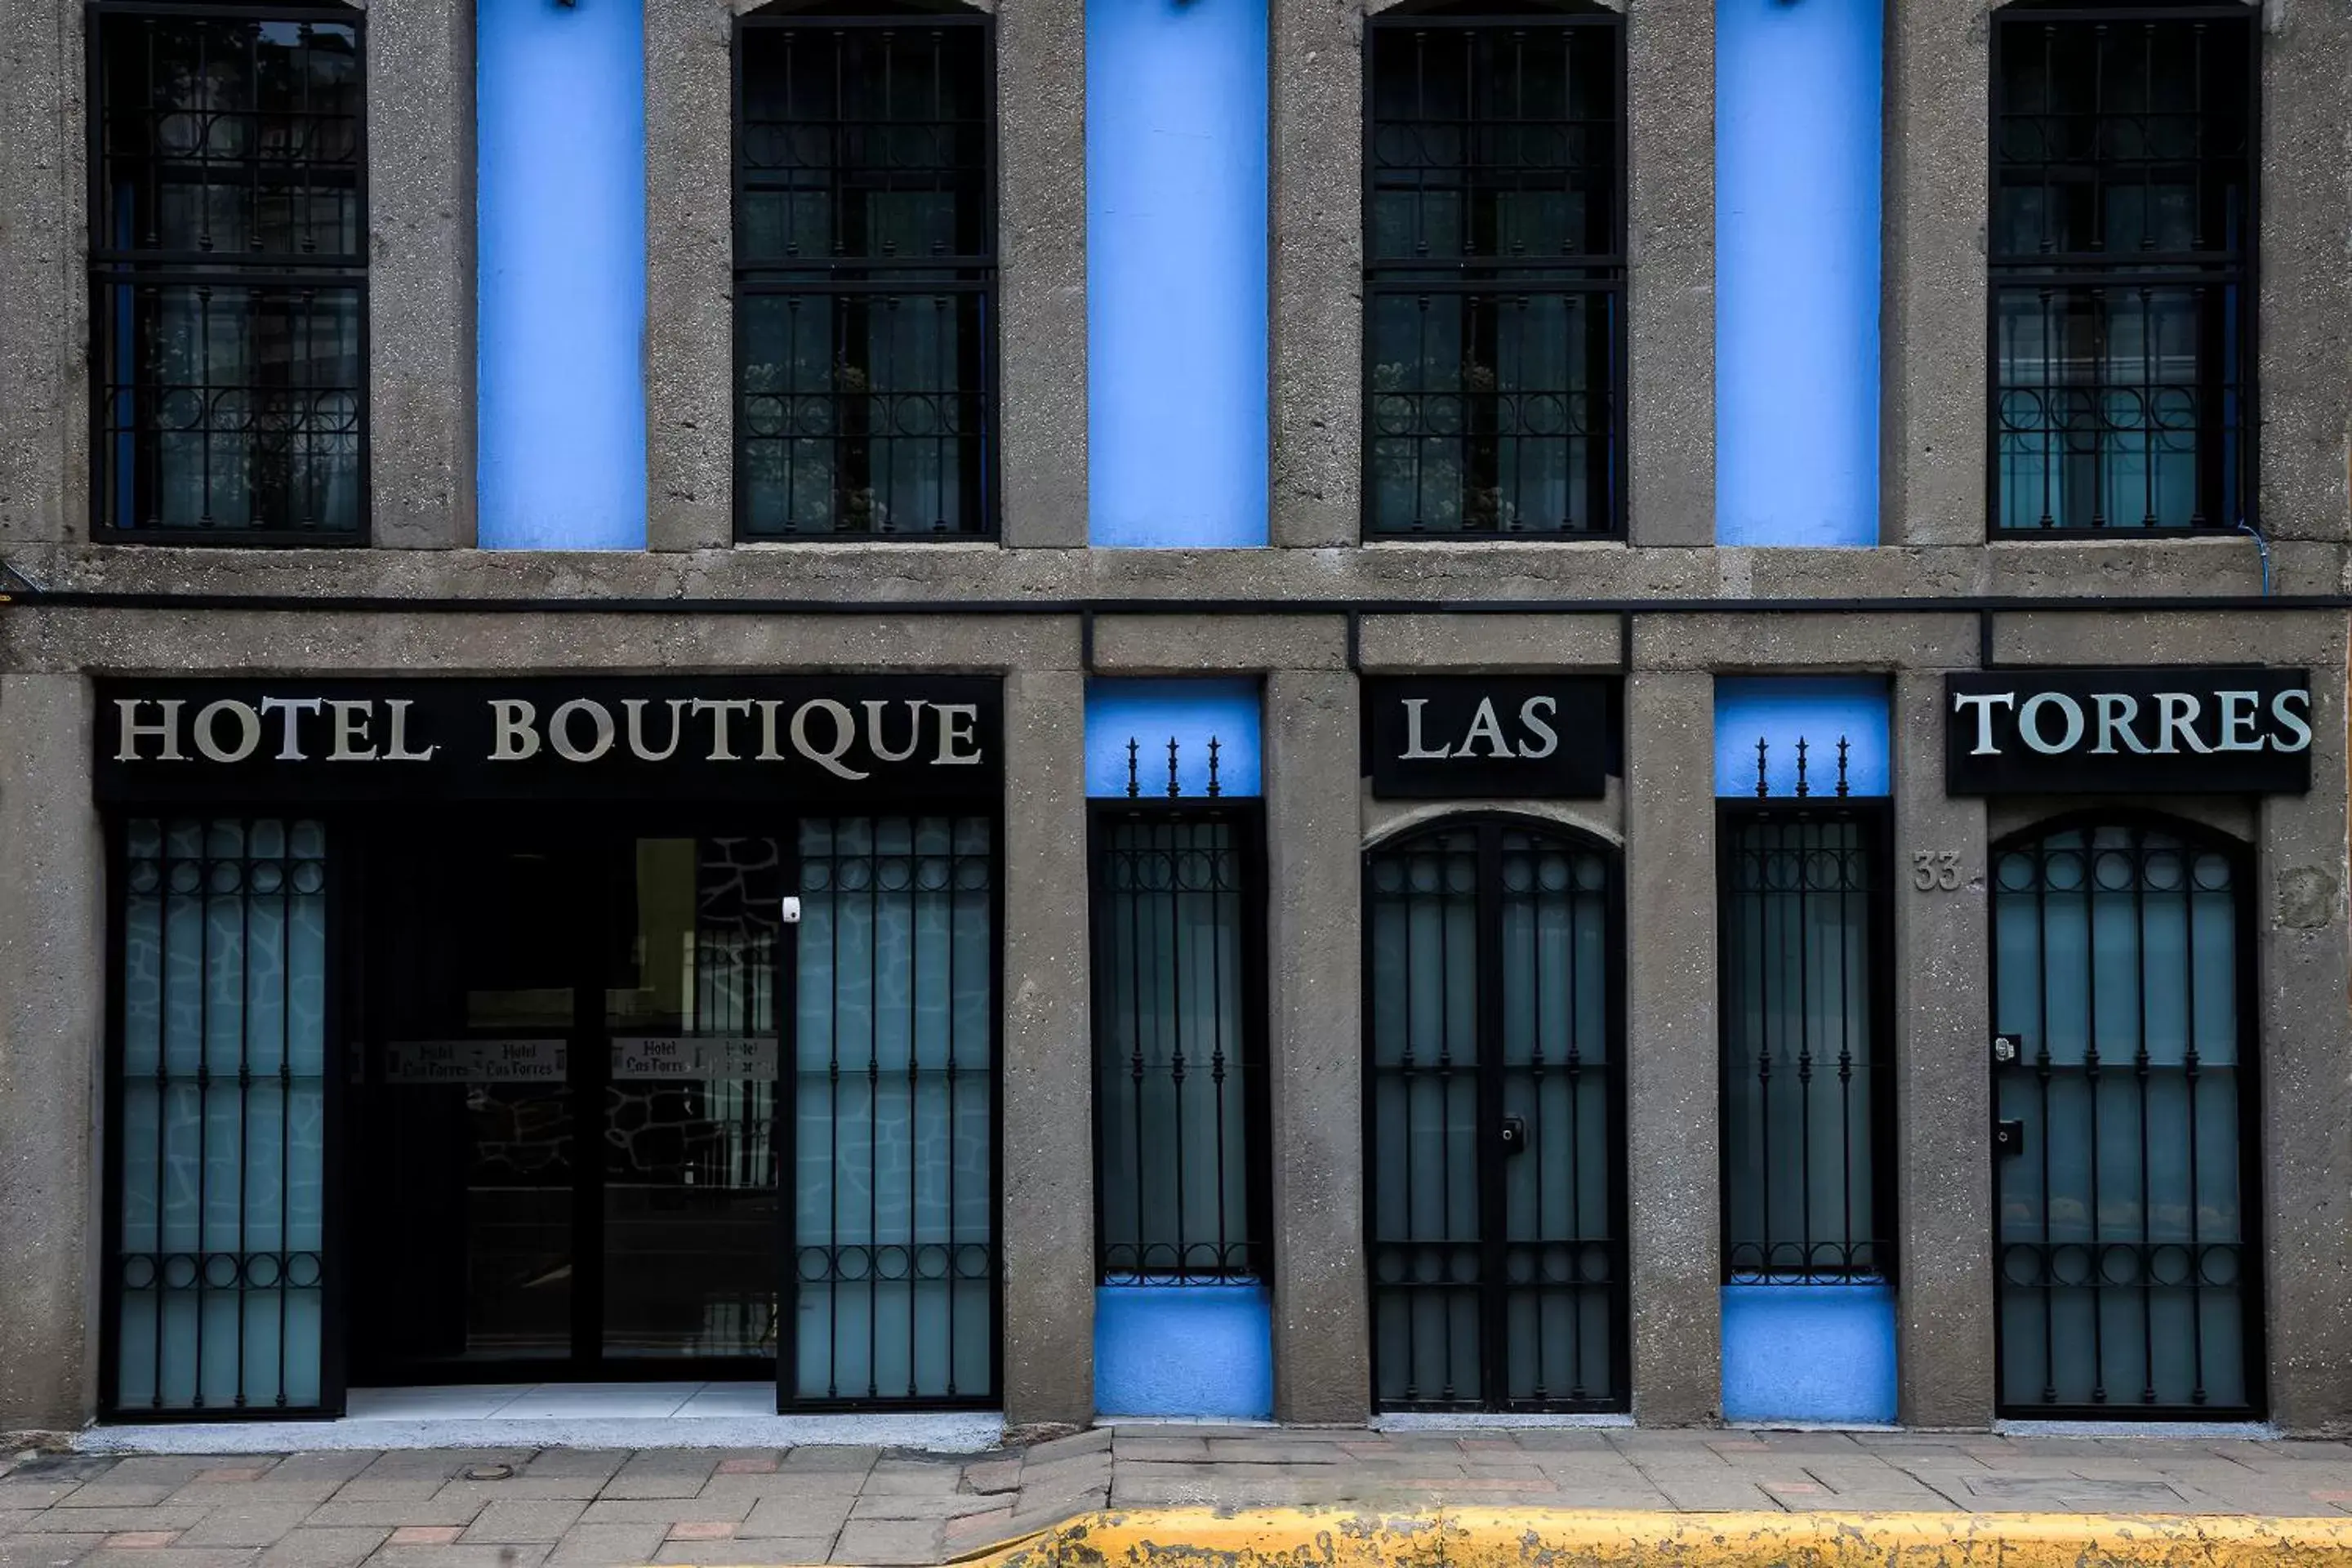 Facade/entrance in Capital O Hotel Boutique Las Torres